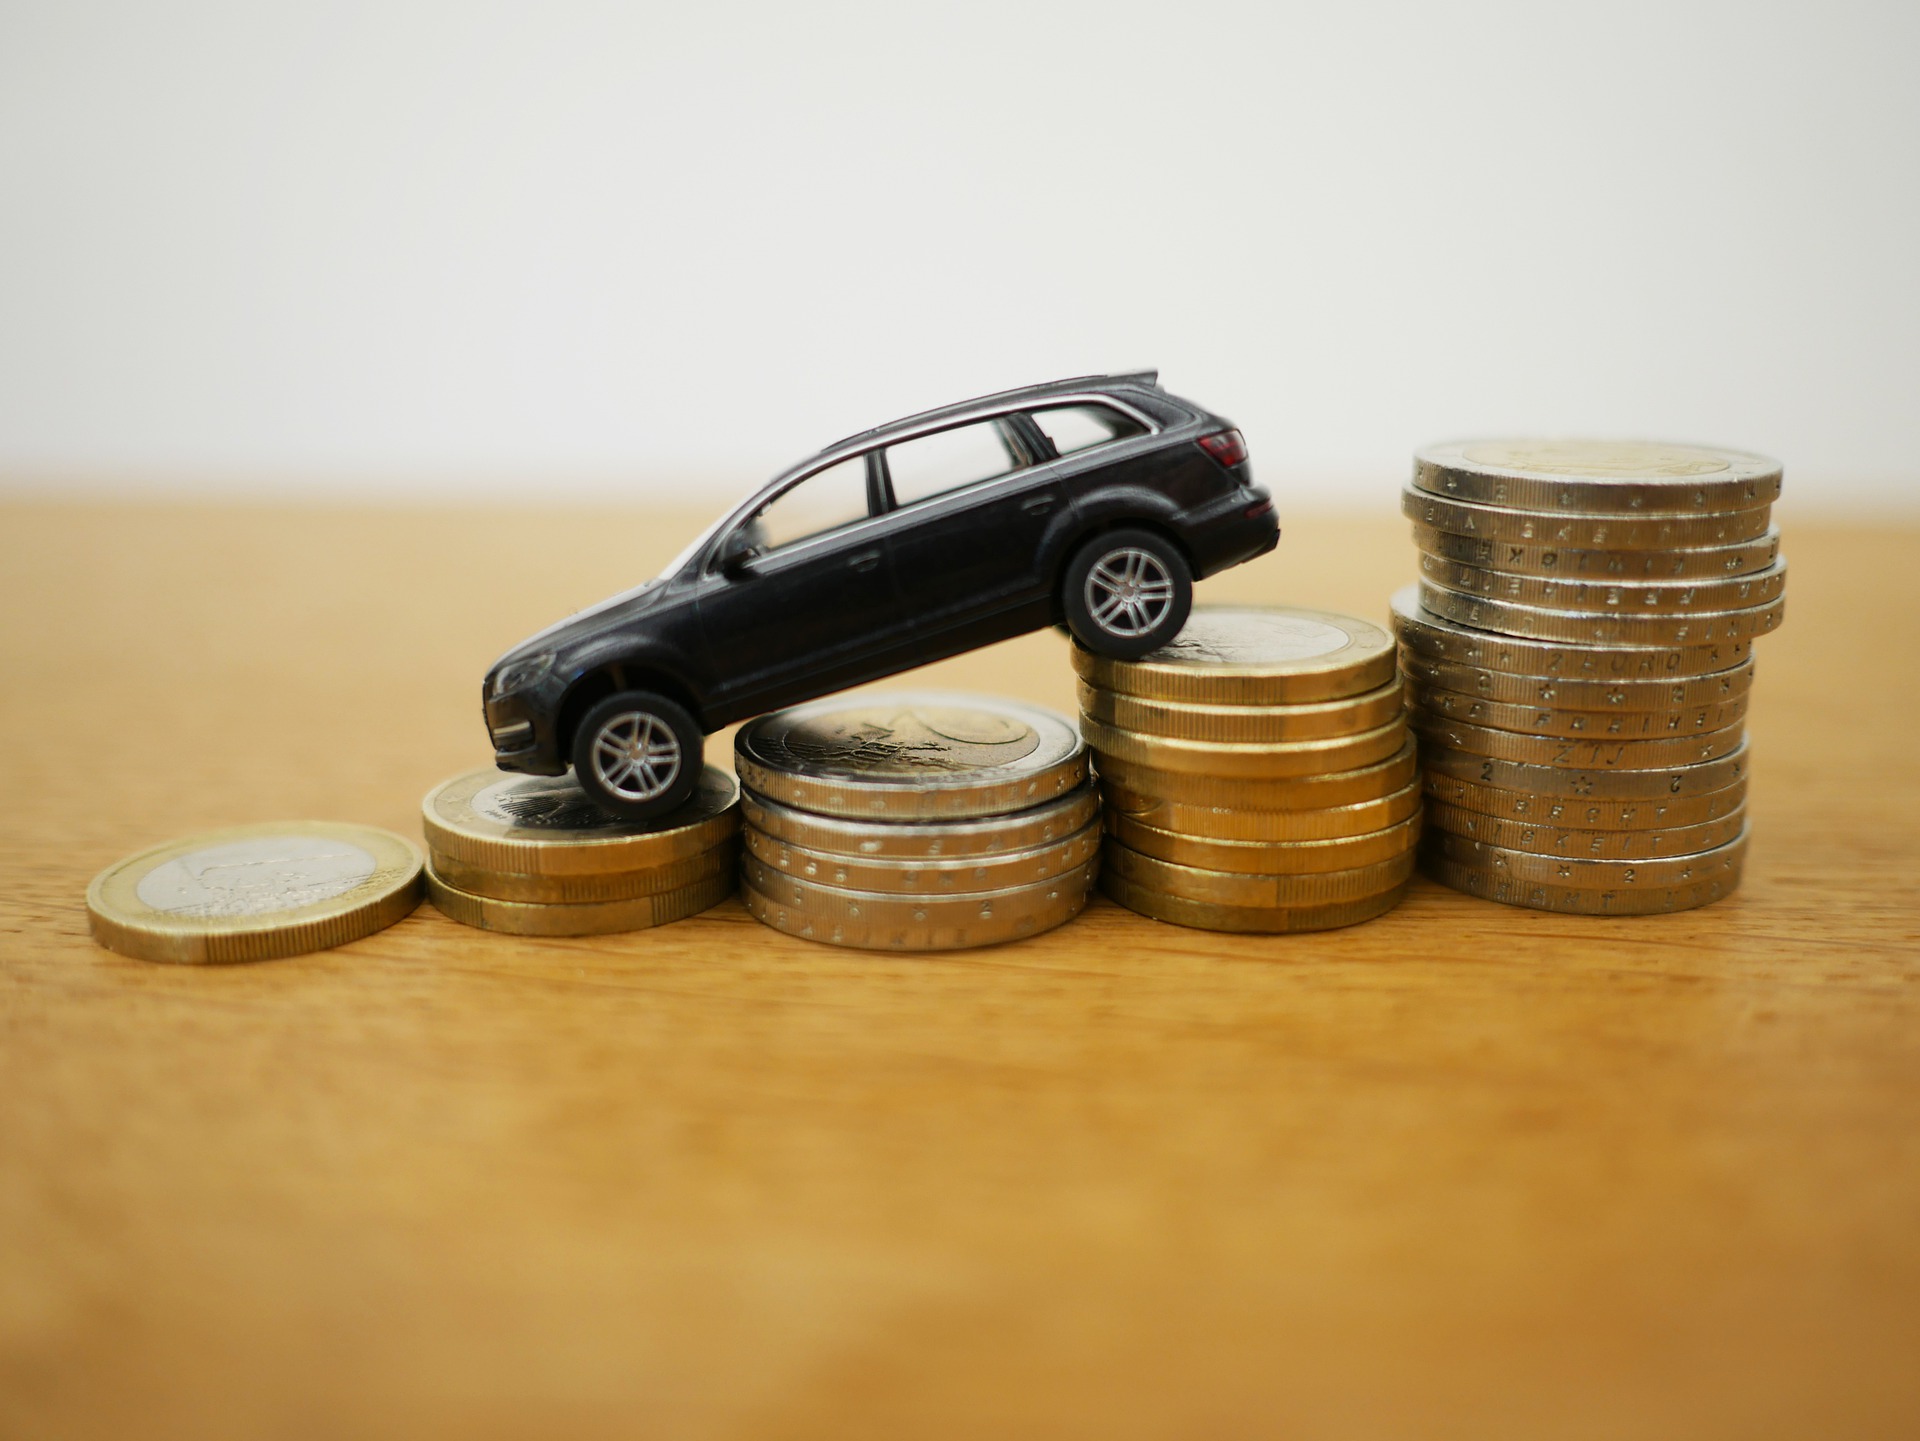 Samochód zabawka na monetach euro - Zakup samochodu dzięki małemu VAT-owi?